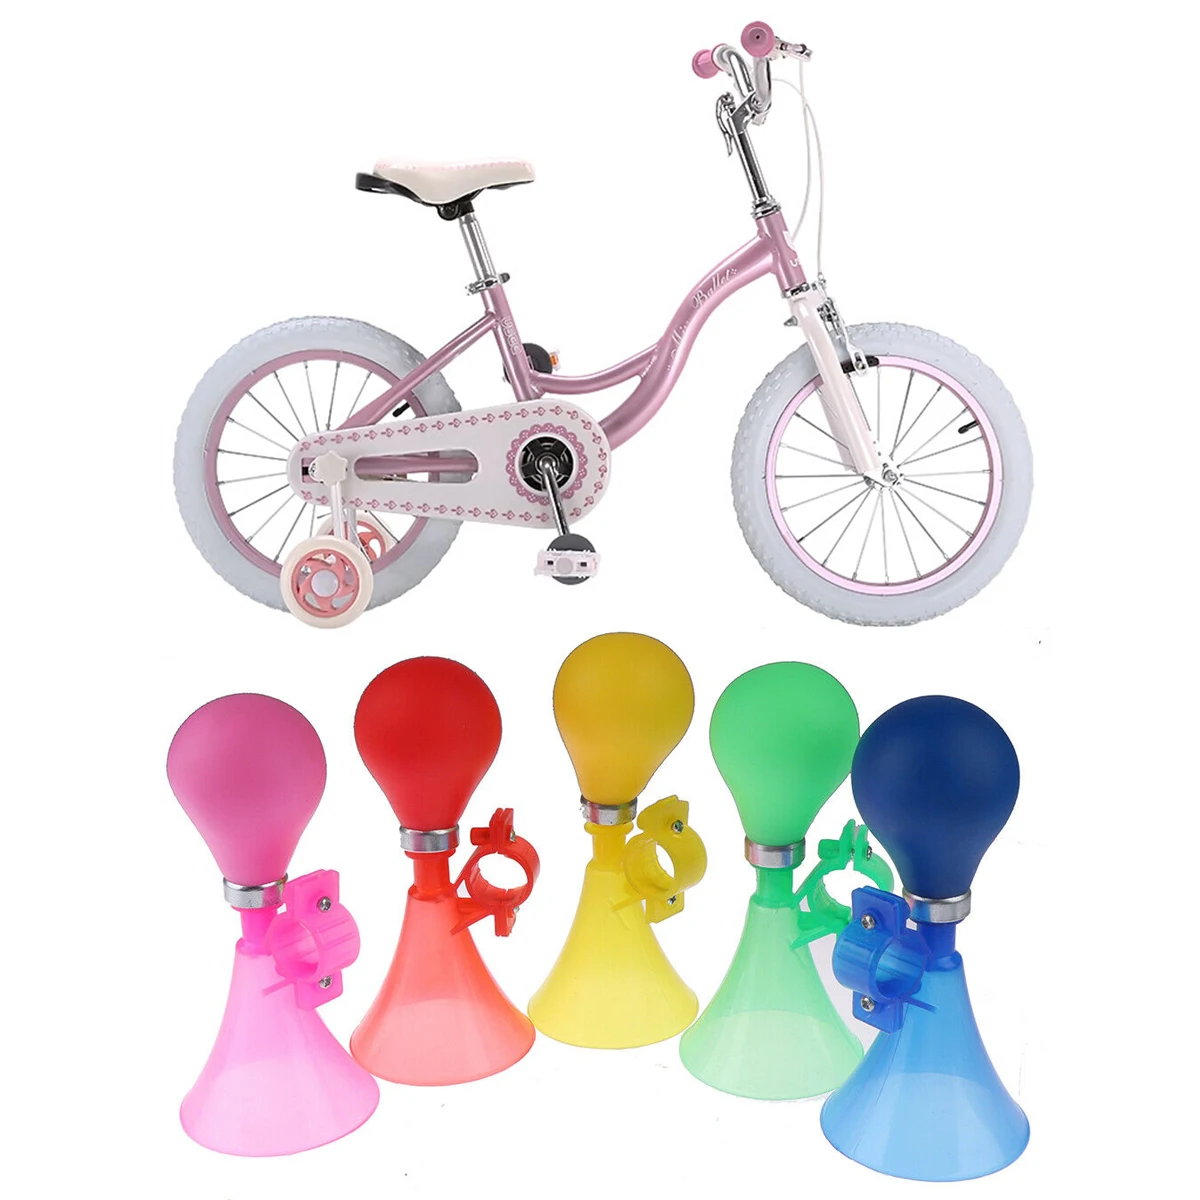 Bicycle Bell Ladybug Beetle Boll Ladybird Alarm Bike Metal Girls Kids Pink X5U2 